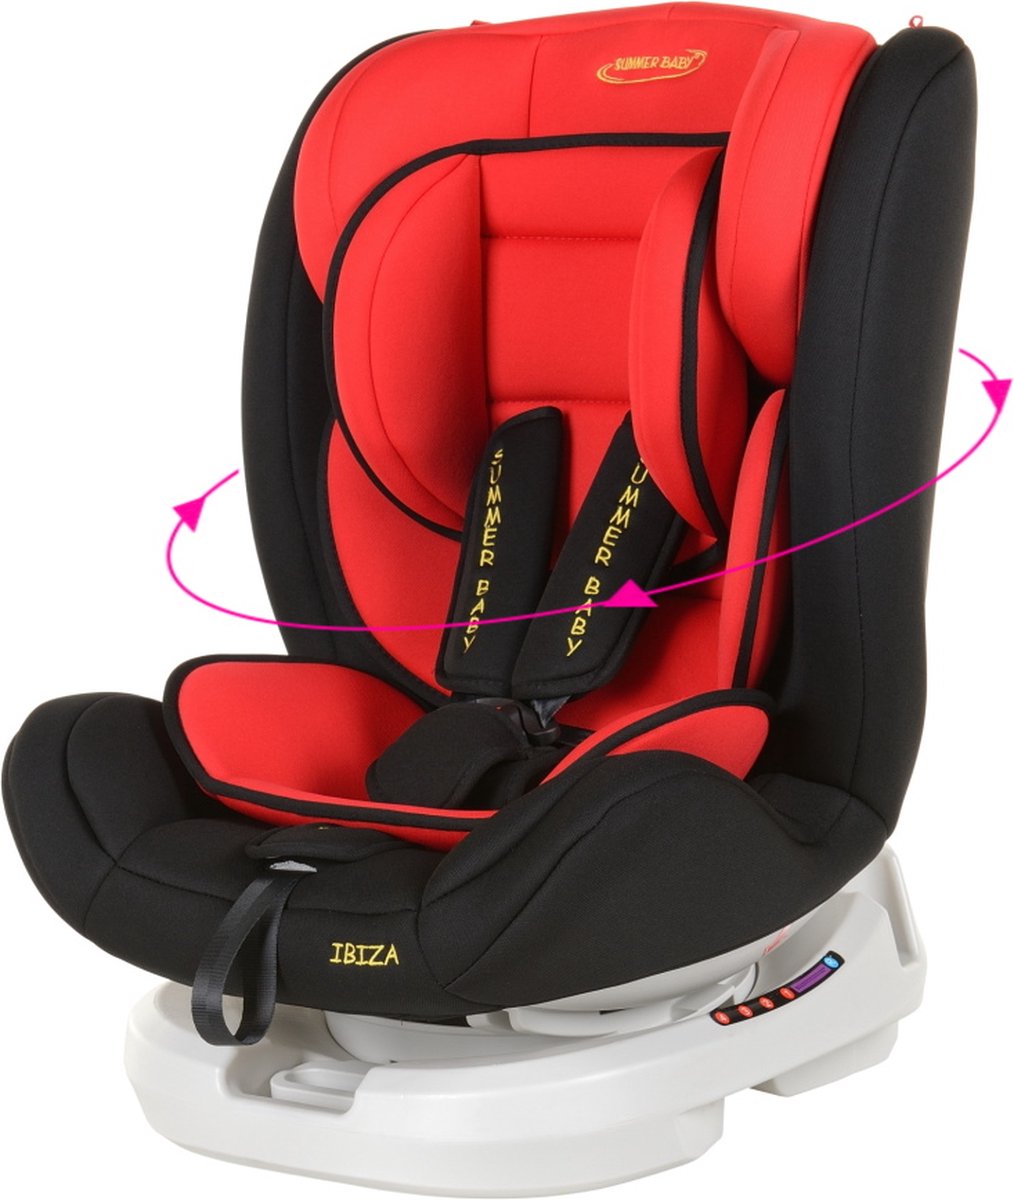 Caretero Siège auto ARRO siège auto pour enfant avec Isofix à 360° - Siège  auto 0-36 | bol